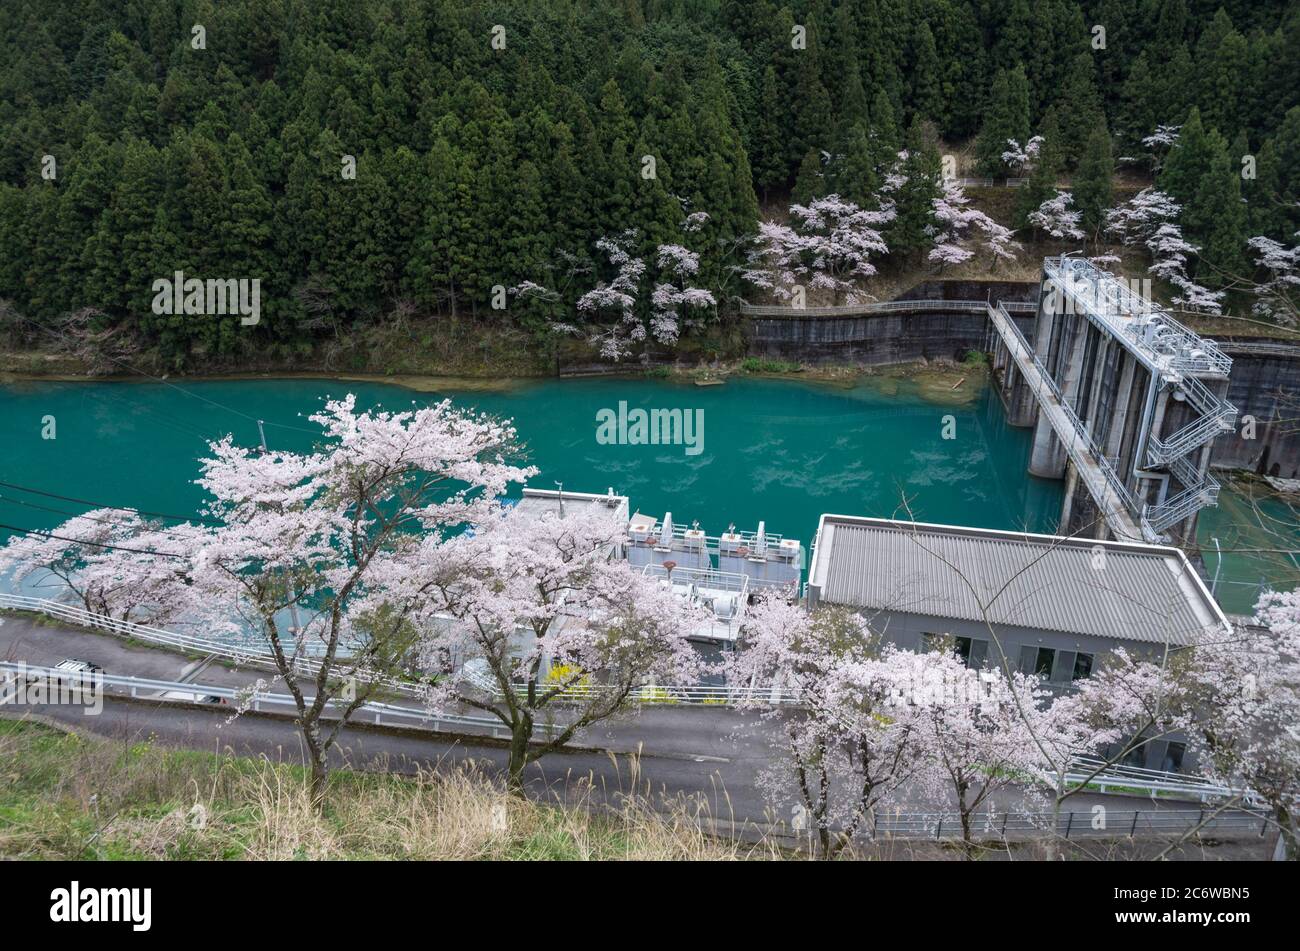 Le barrage de Minawa sur la rivière Iya est un barrage par gravité construit en 1959, ici vu au printemps entouré de cerisiers en fleurs, Tokushima, Shikoku, Japon Banque D'Images